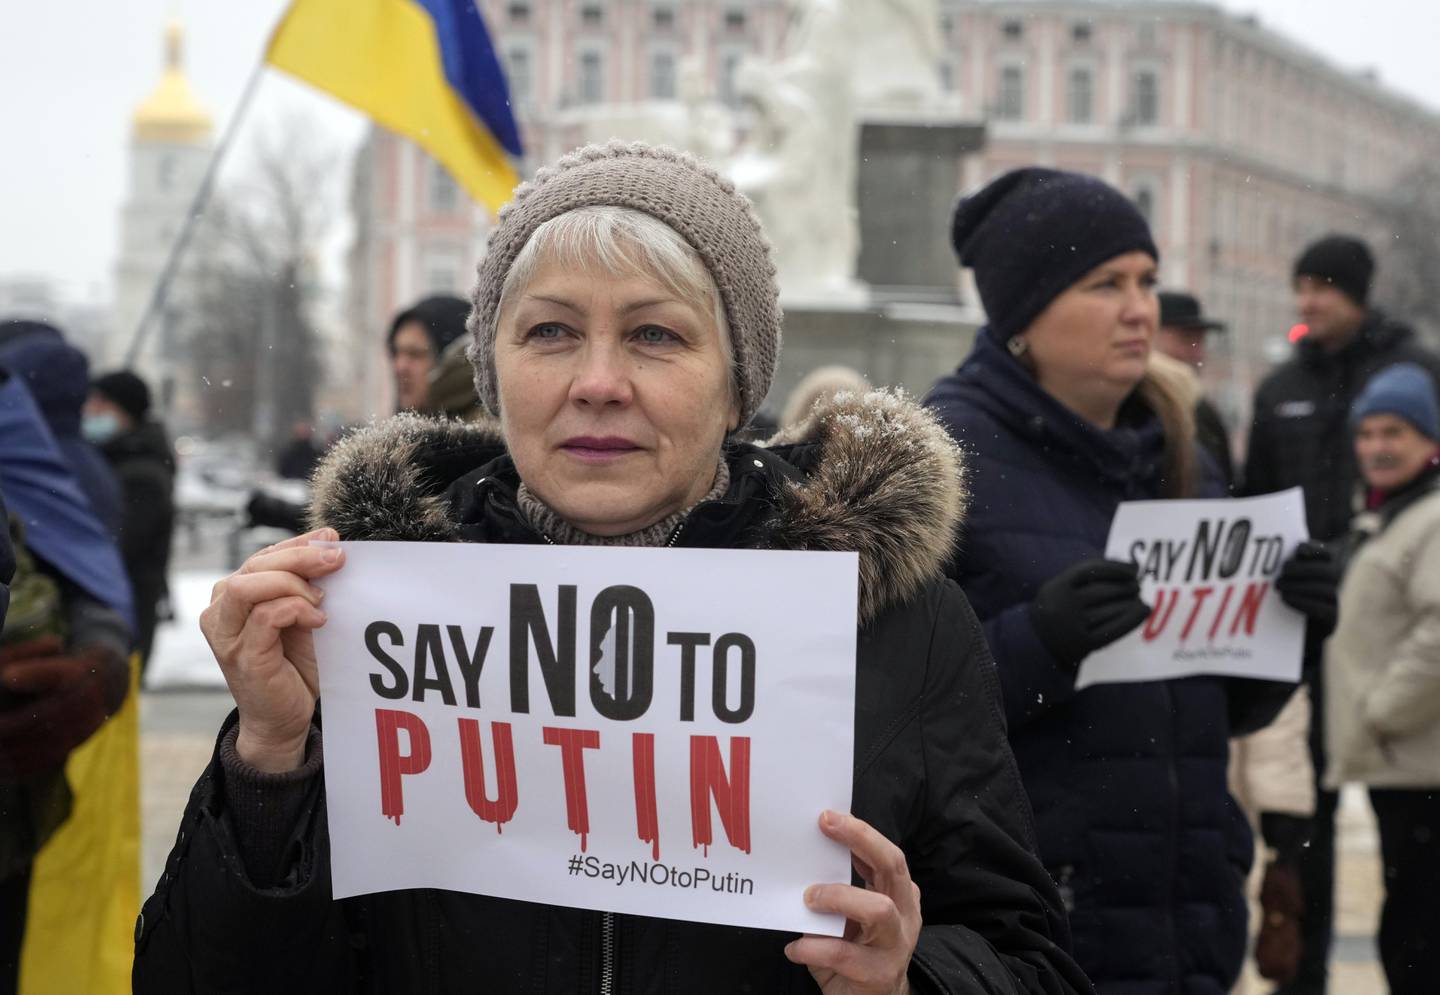 I helgen var det store demonstrasjoner i Ukrainas hovedstad Kiev og en rekke andre byer i verden. De ønsker at USA skal si tvert nei til Russlands krav. Foto: Efrem Lukatskij / AP / NTB